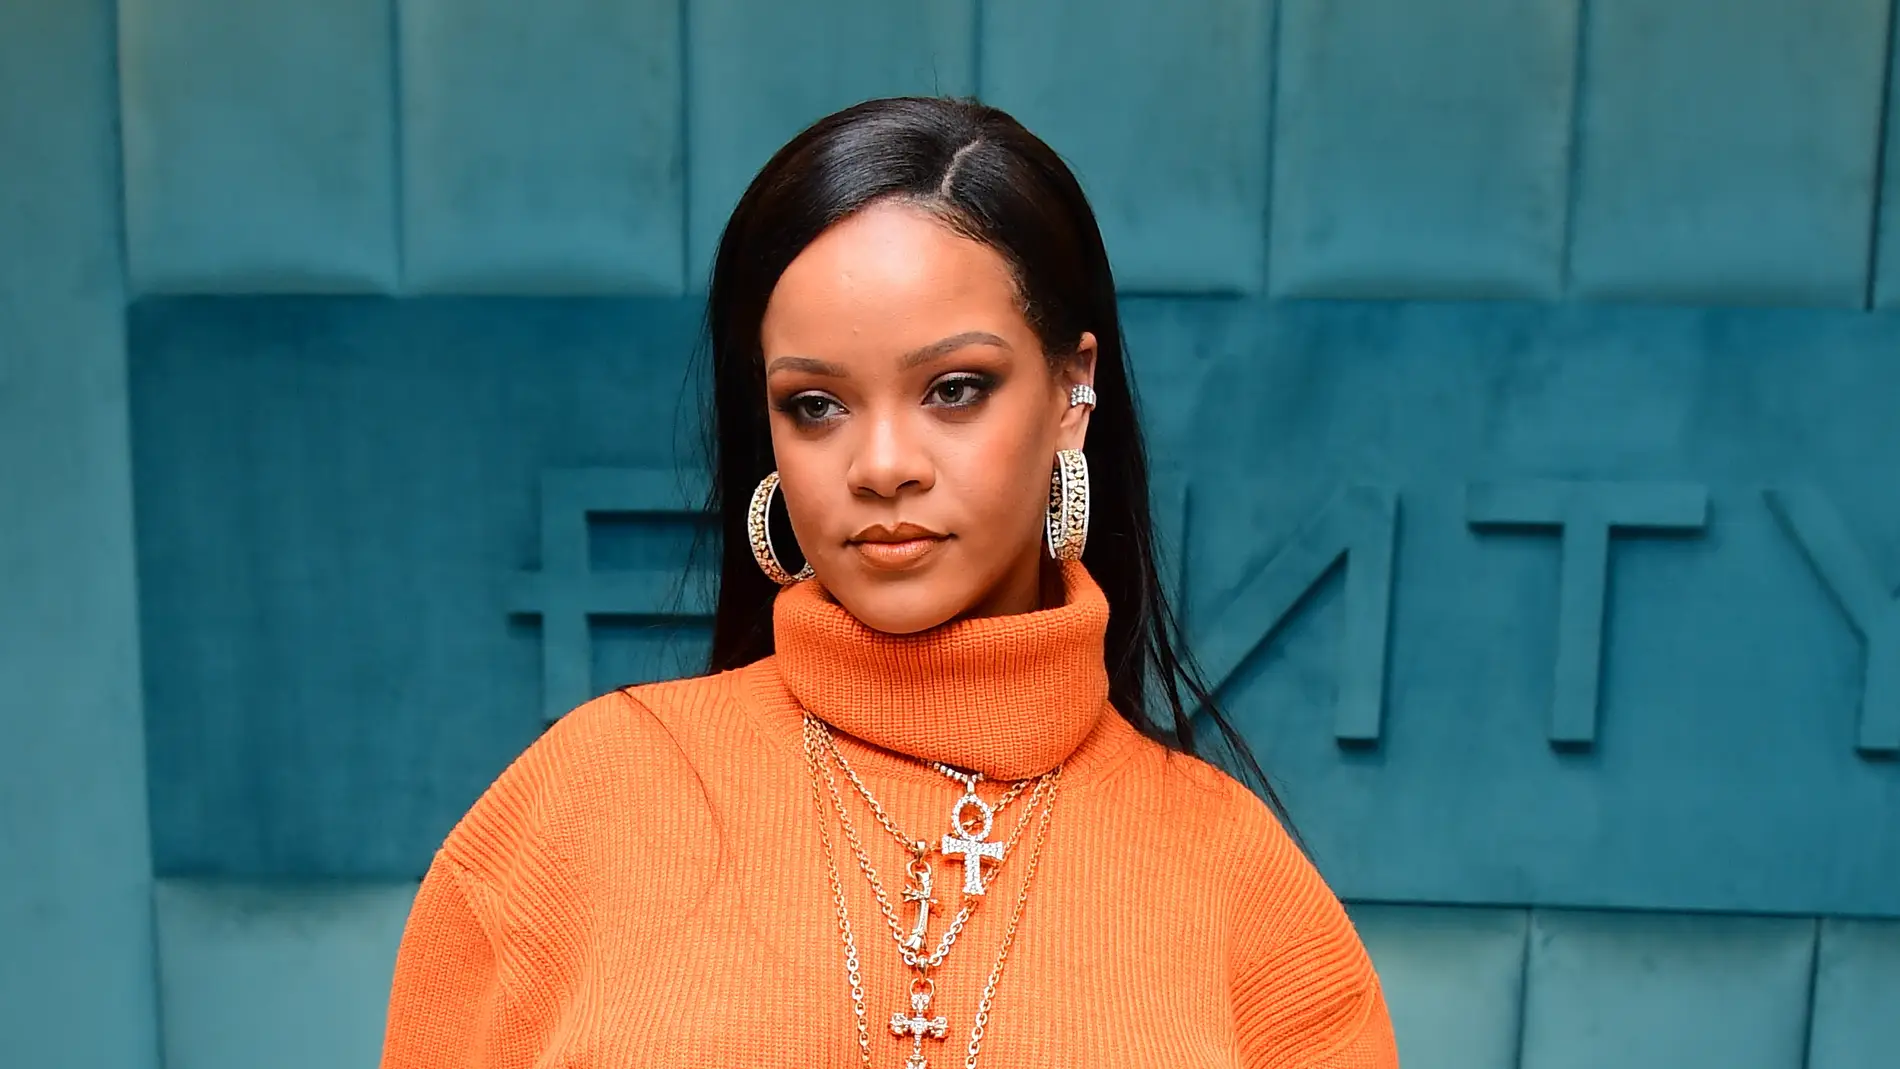 Rihanna durante un evento en Nueva York